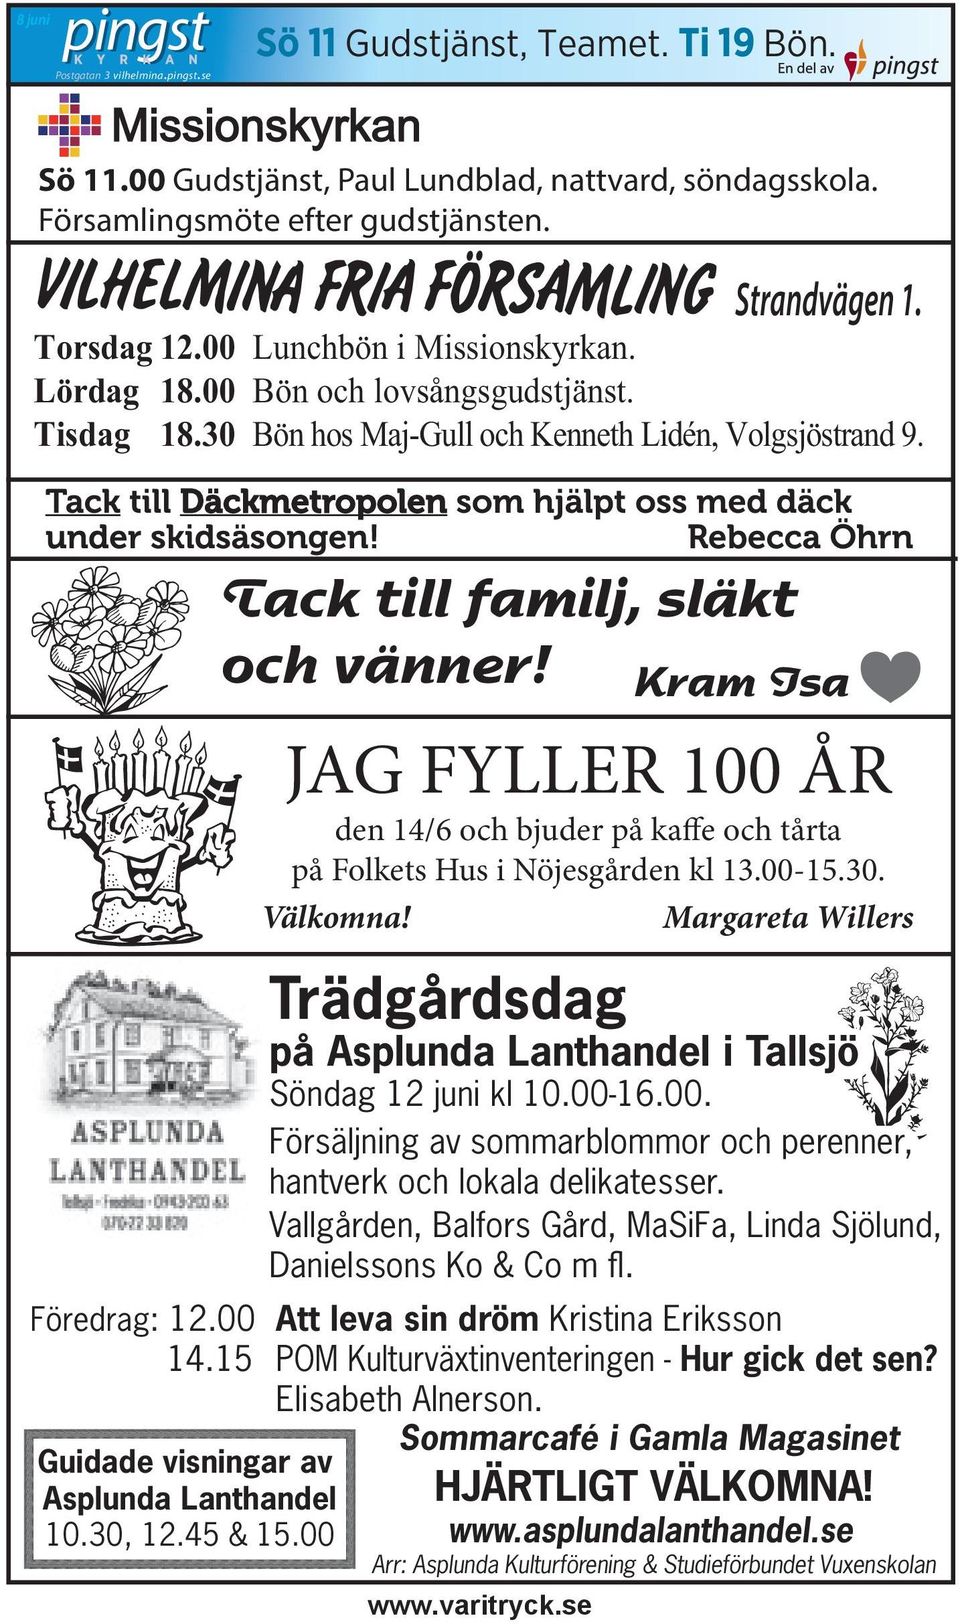 Kram Isa JAG FYLLER 100 ÅR den 14/6 och bjuder på kaffe och tårta på Folkets Hus i Nöjesgården kl 13.00-15.30. Välkomna!